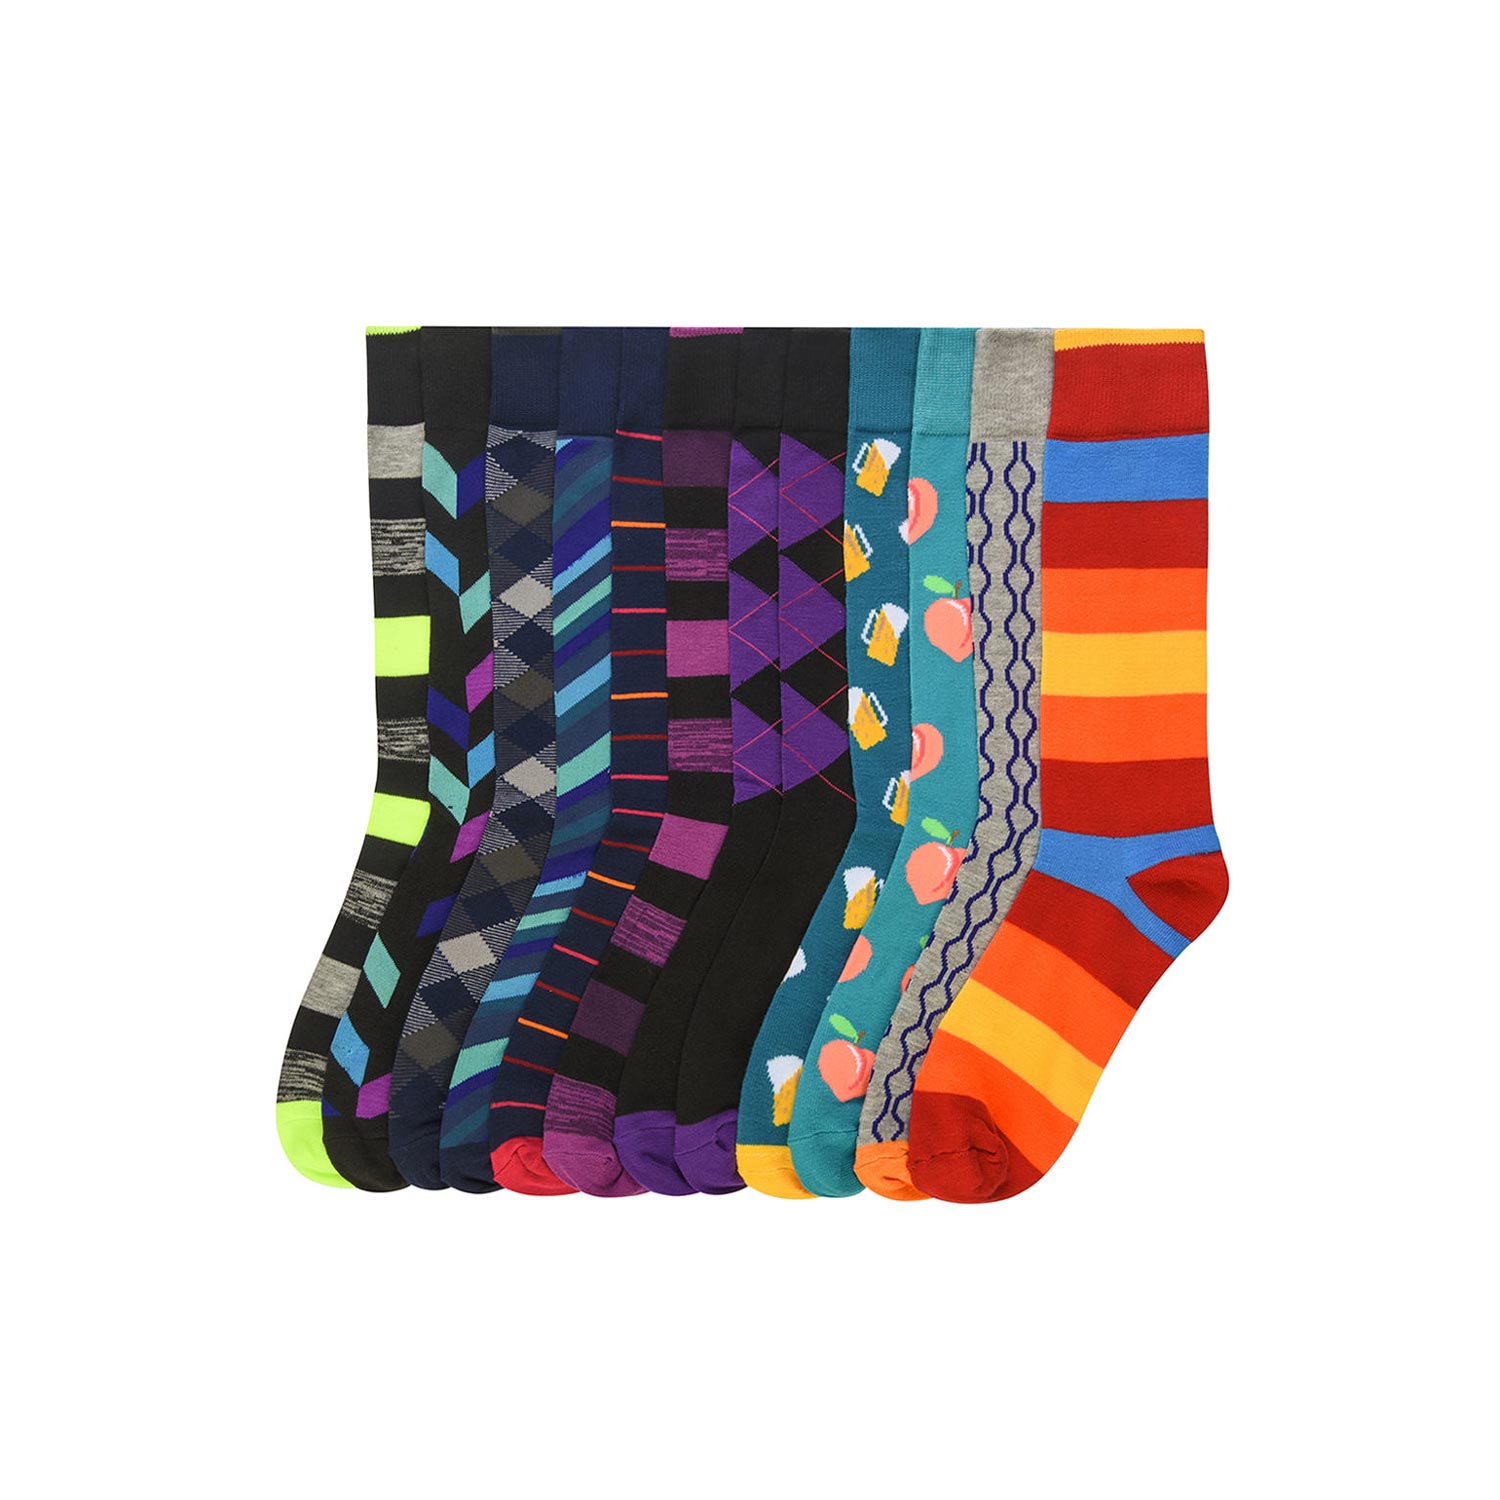  Fun Styled Socks - 12 Pack 